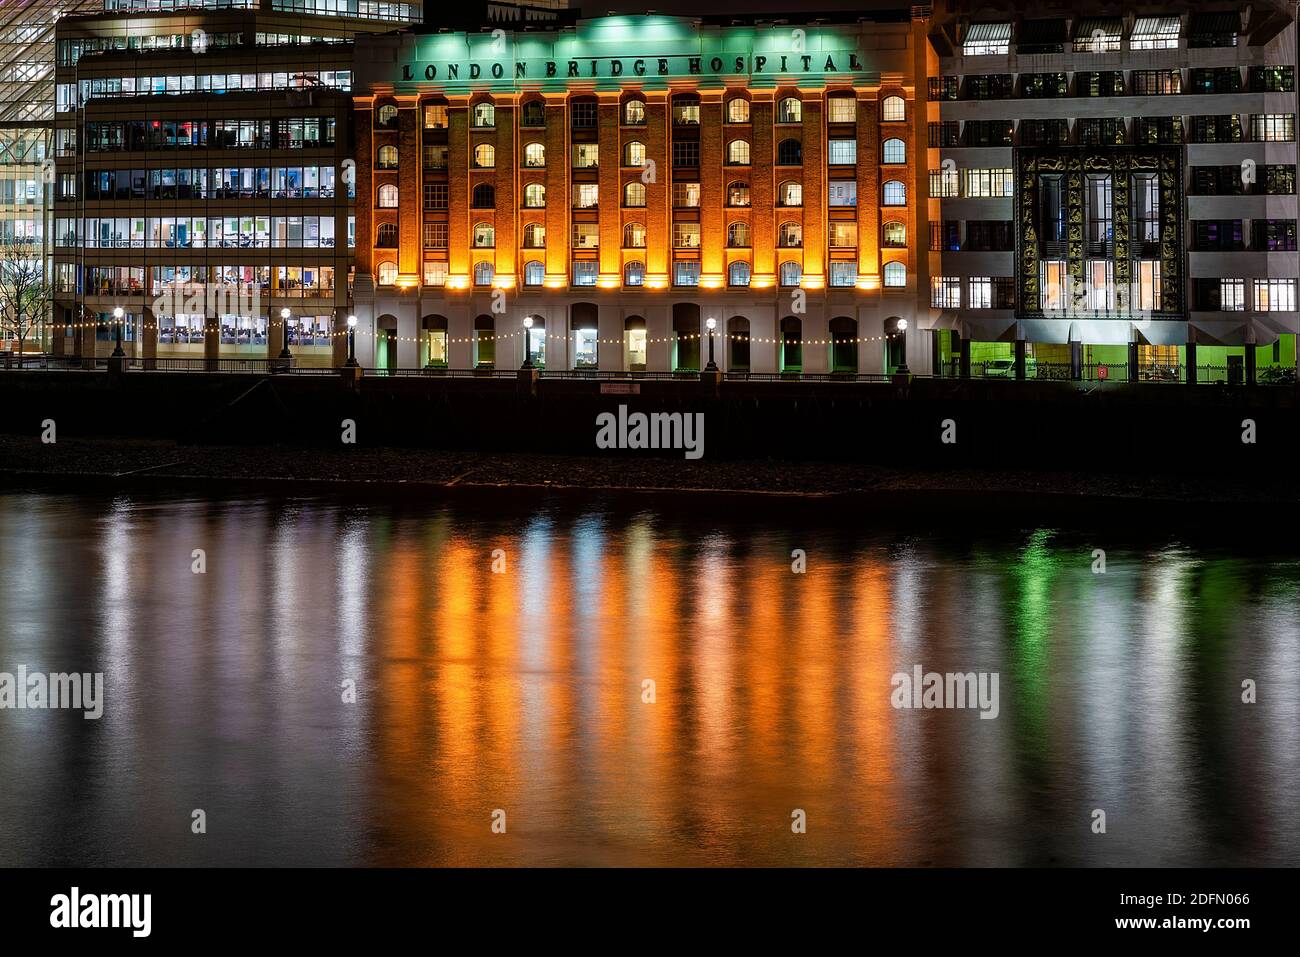 Londra, UK - Gen 2020: London Bridge Hospital illuminato di notte accanto ai moderni edifici degli uffici, che si riflettono nel fiume Tamigi Foto Stock